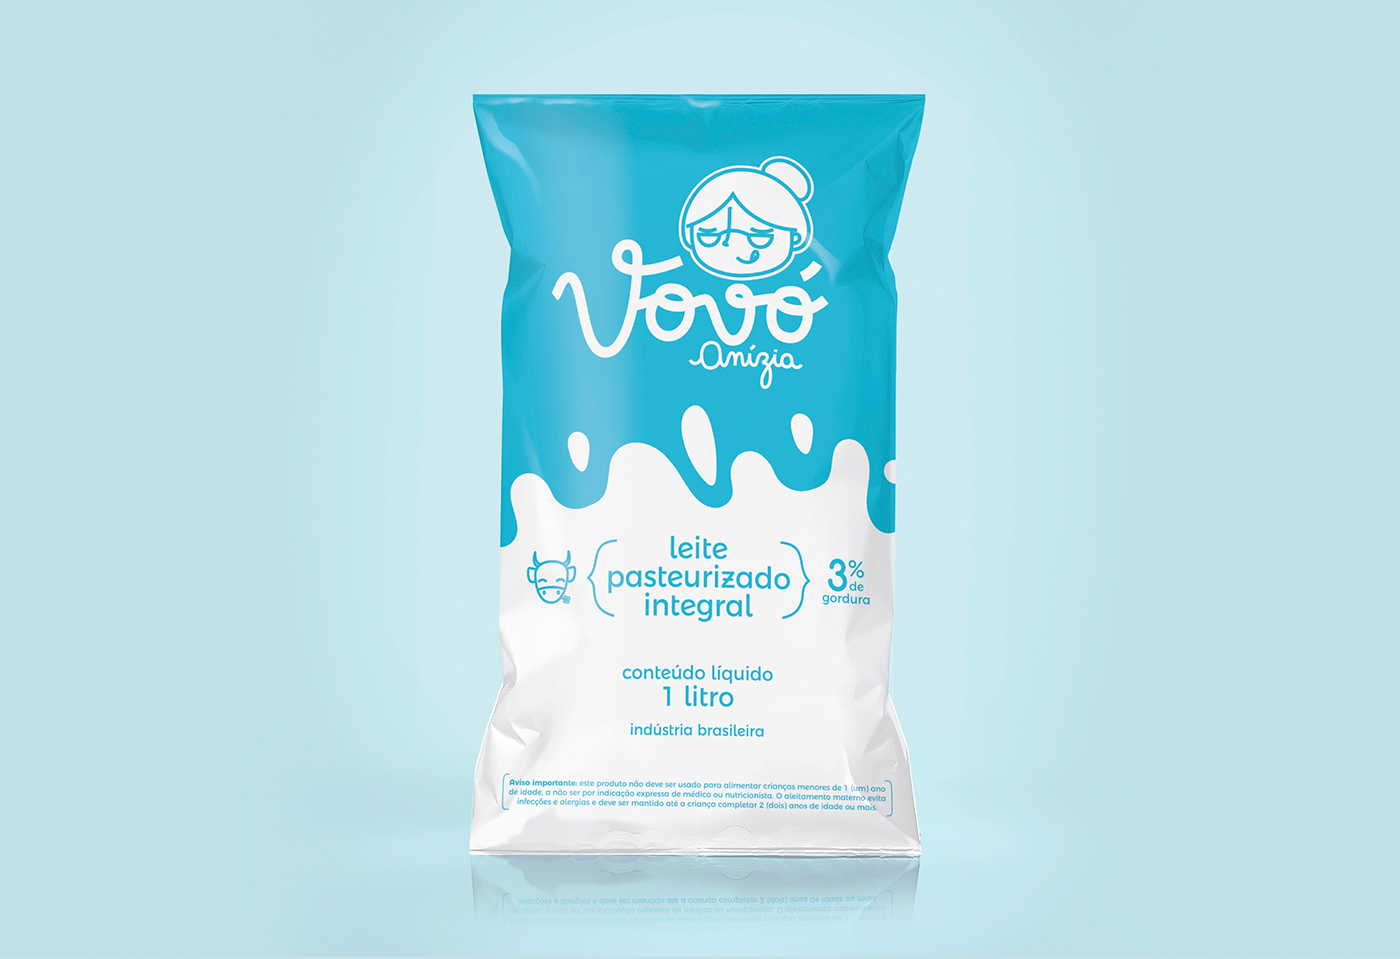 milk Dairy vovó grandma brand package